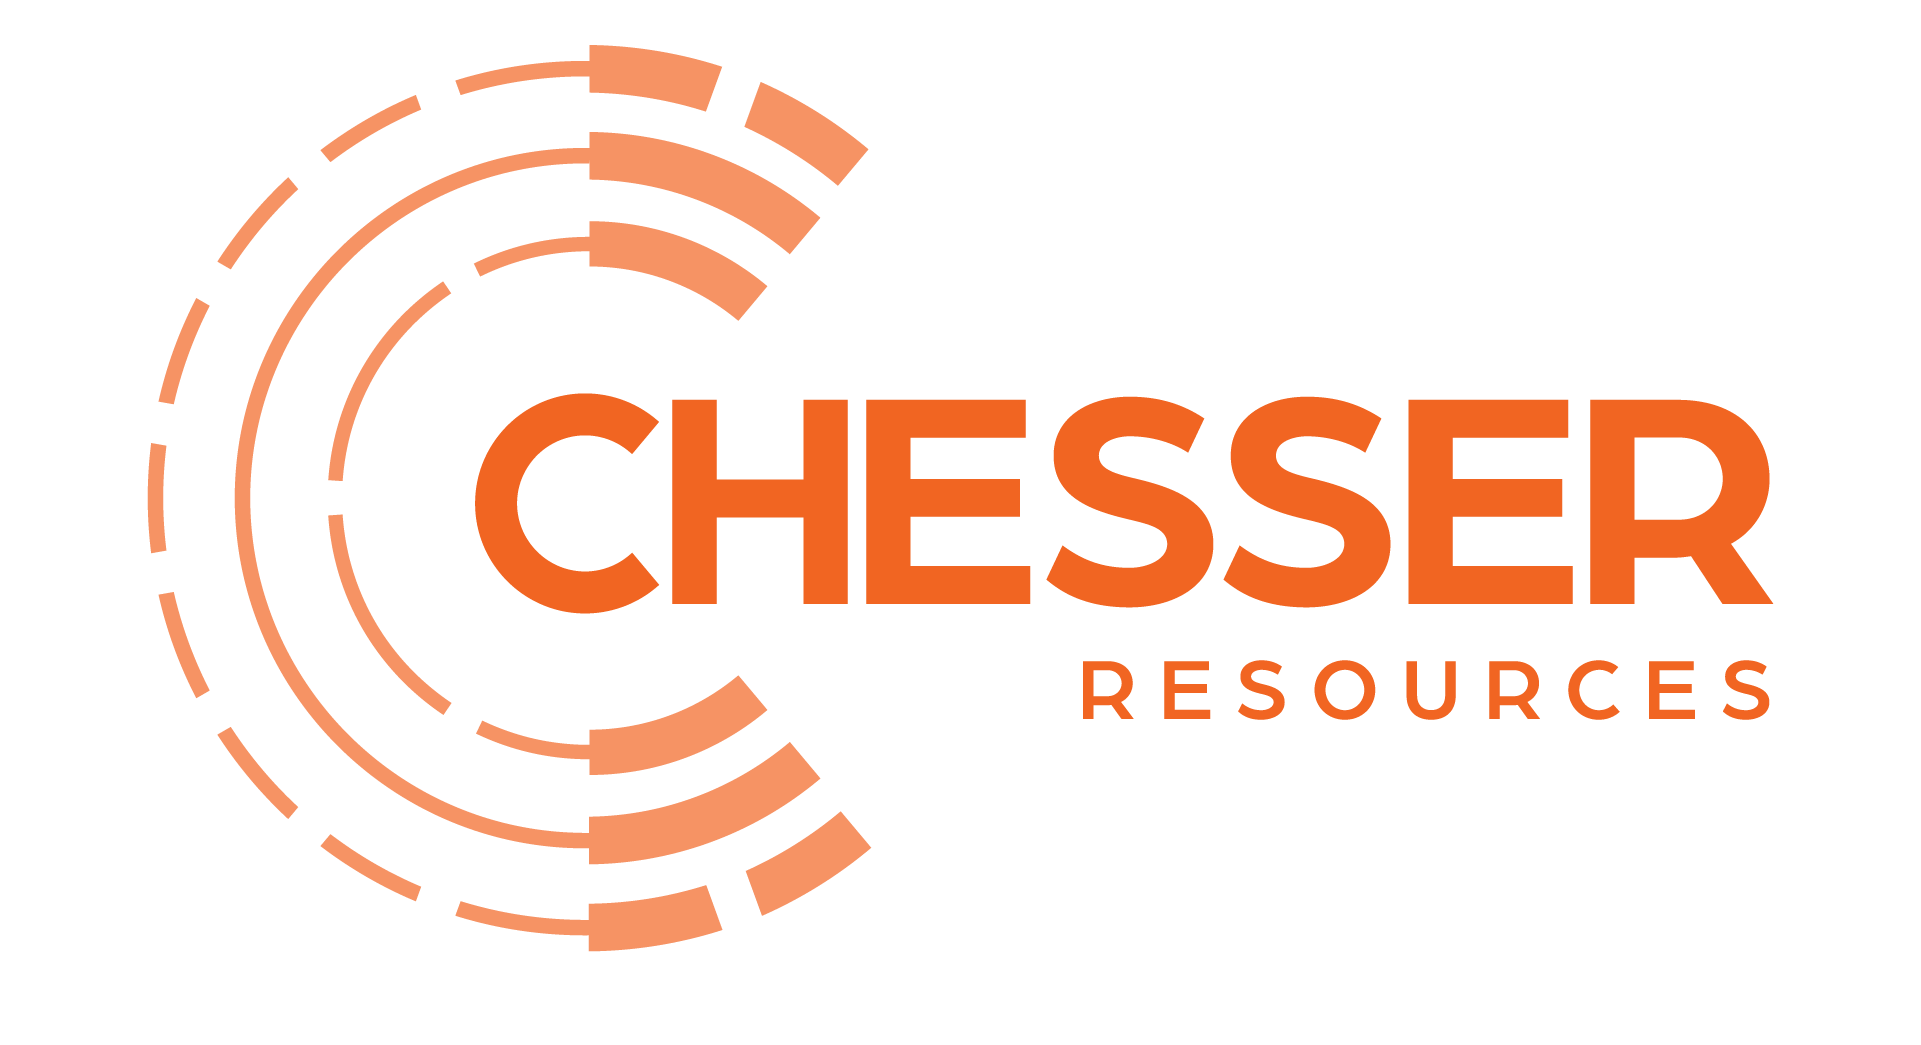 Chesser Resources